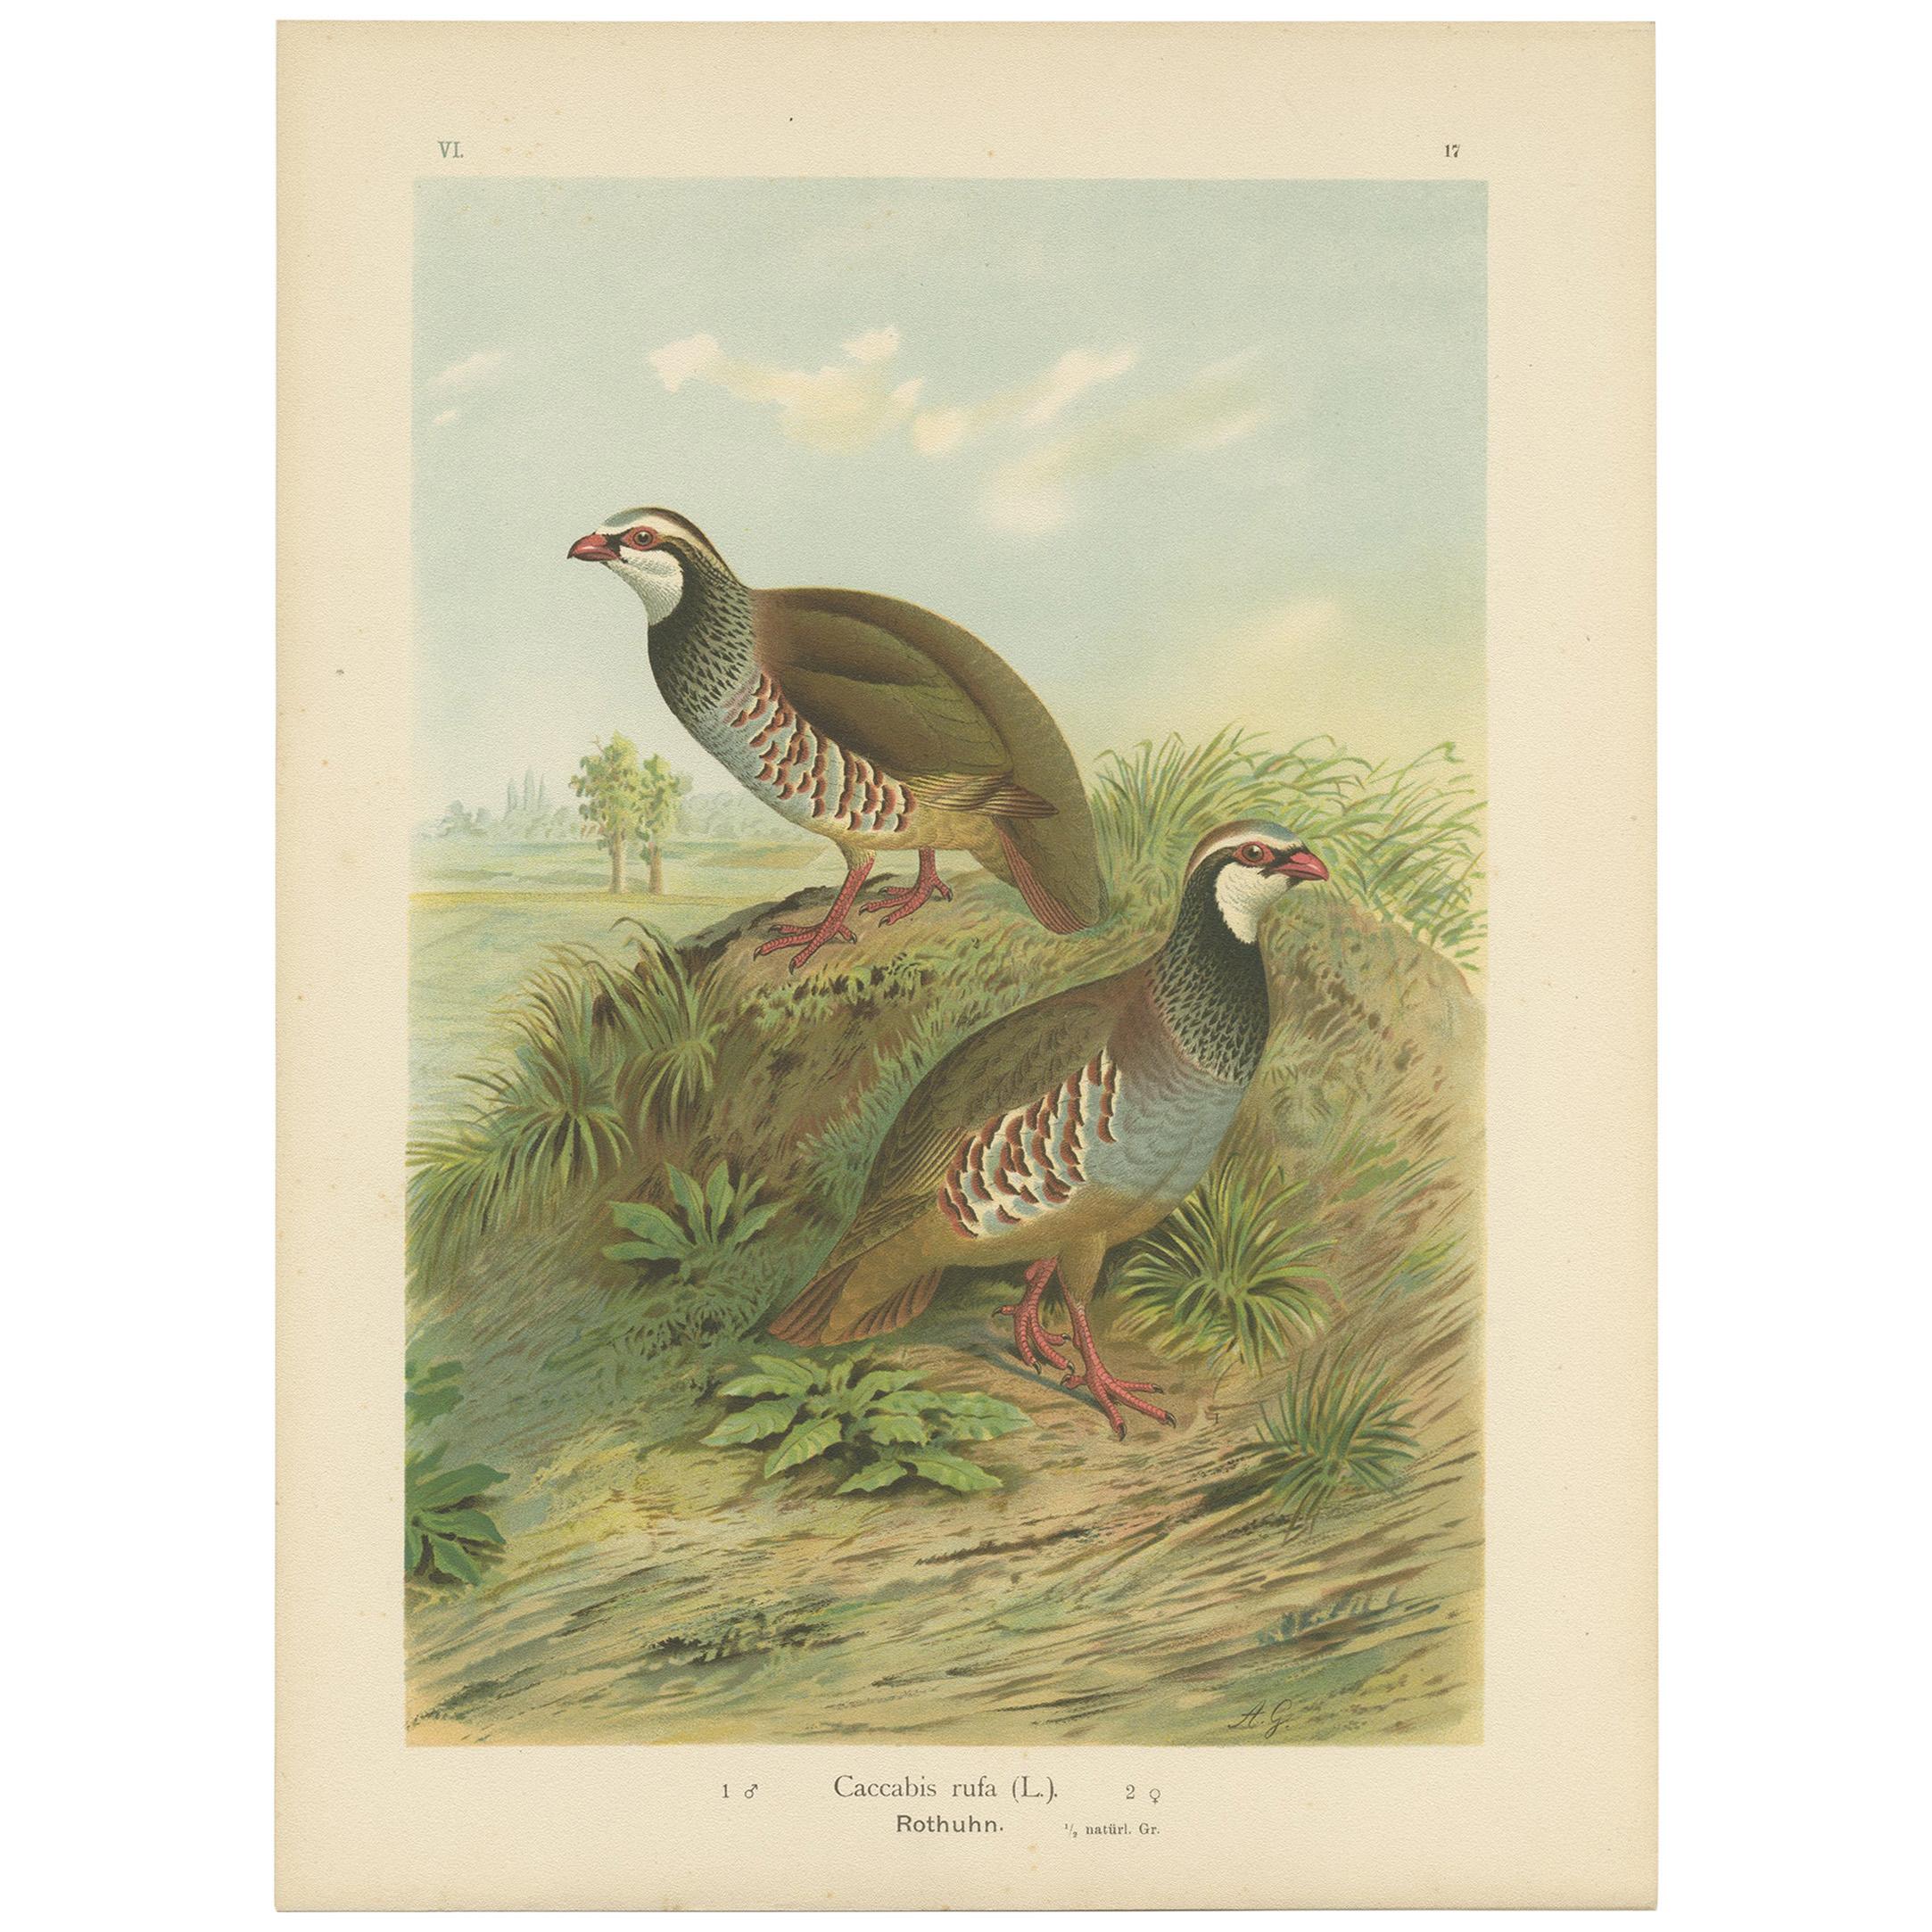 Antique Bird Print of the Red-Legged Partridge by Naumann, circa 1895